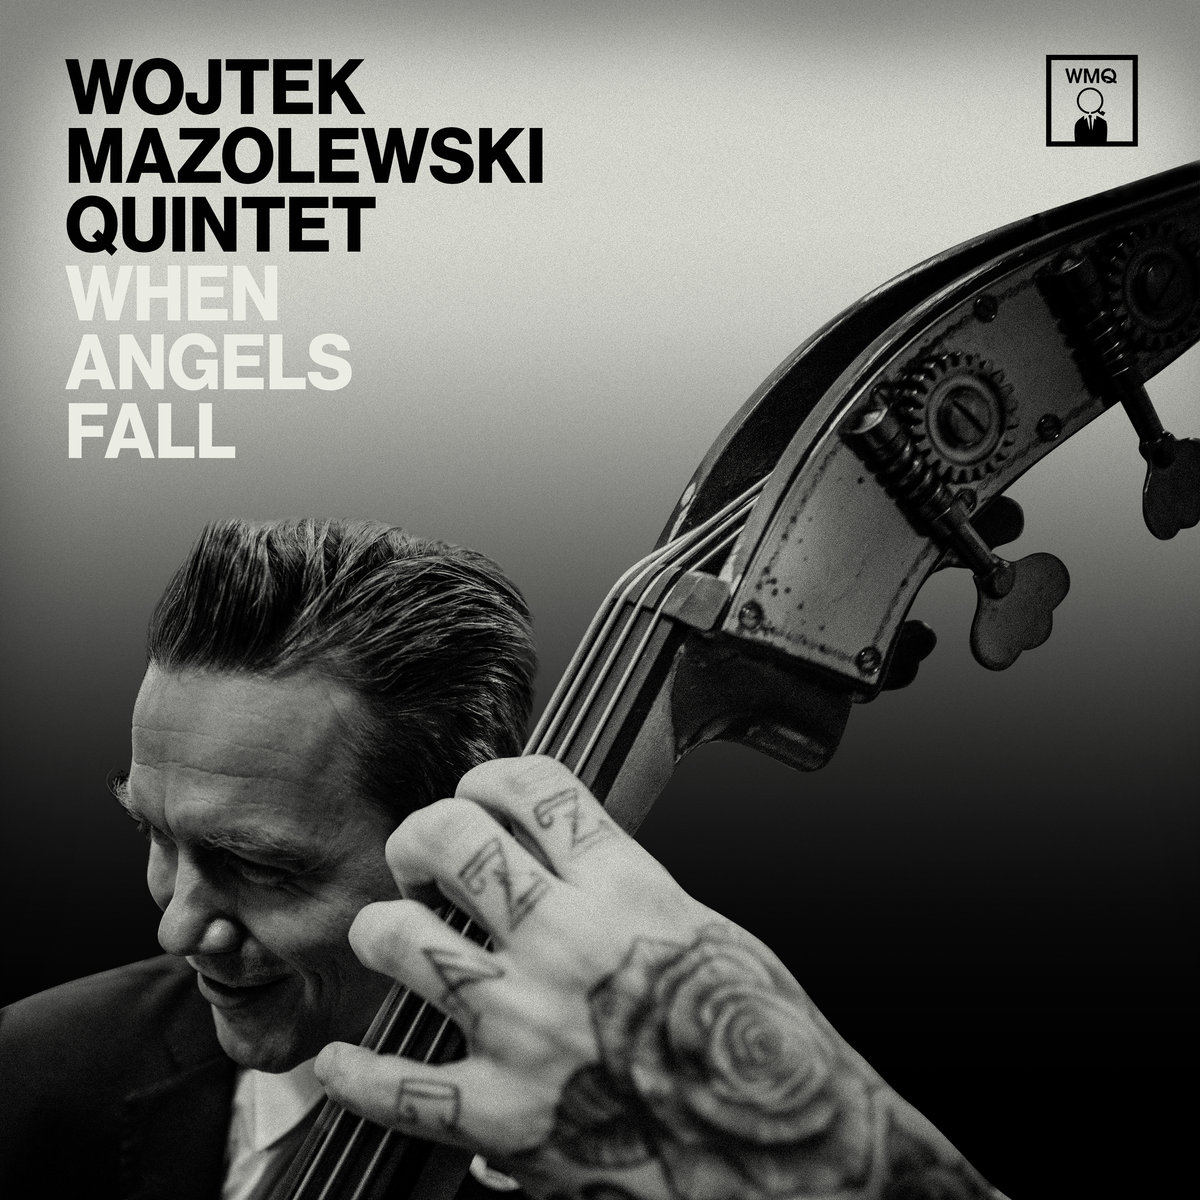 WOJTEK MAZOLEWSKI - Wojtek Mazolewski Quintet : When Angels Fall cover 